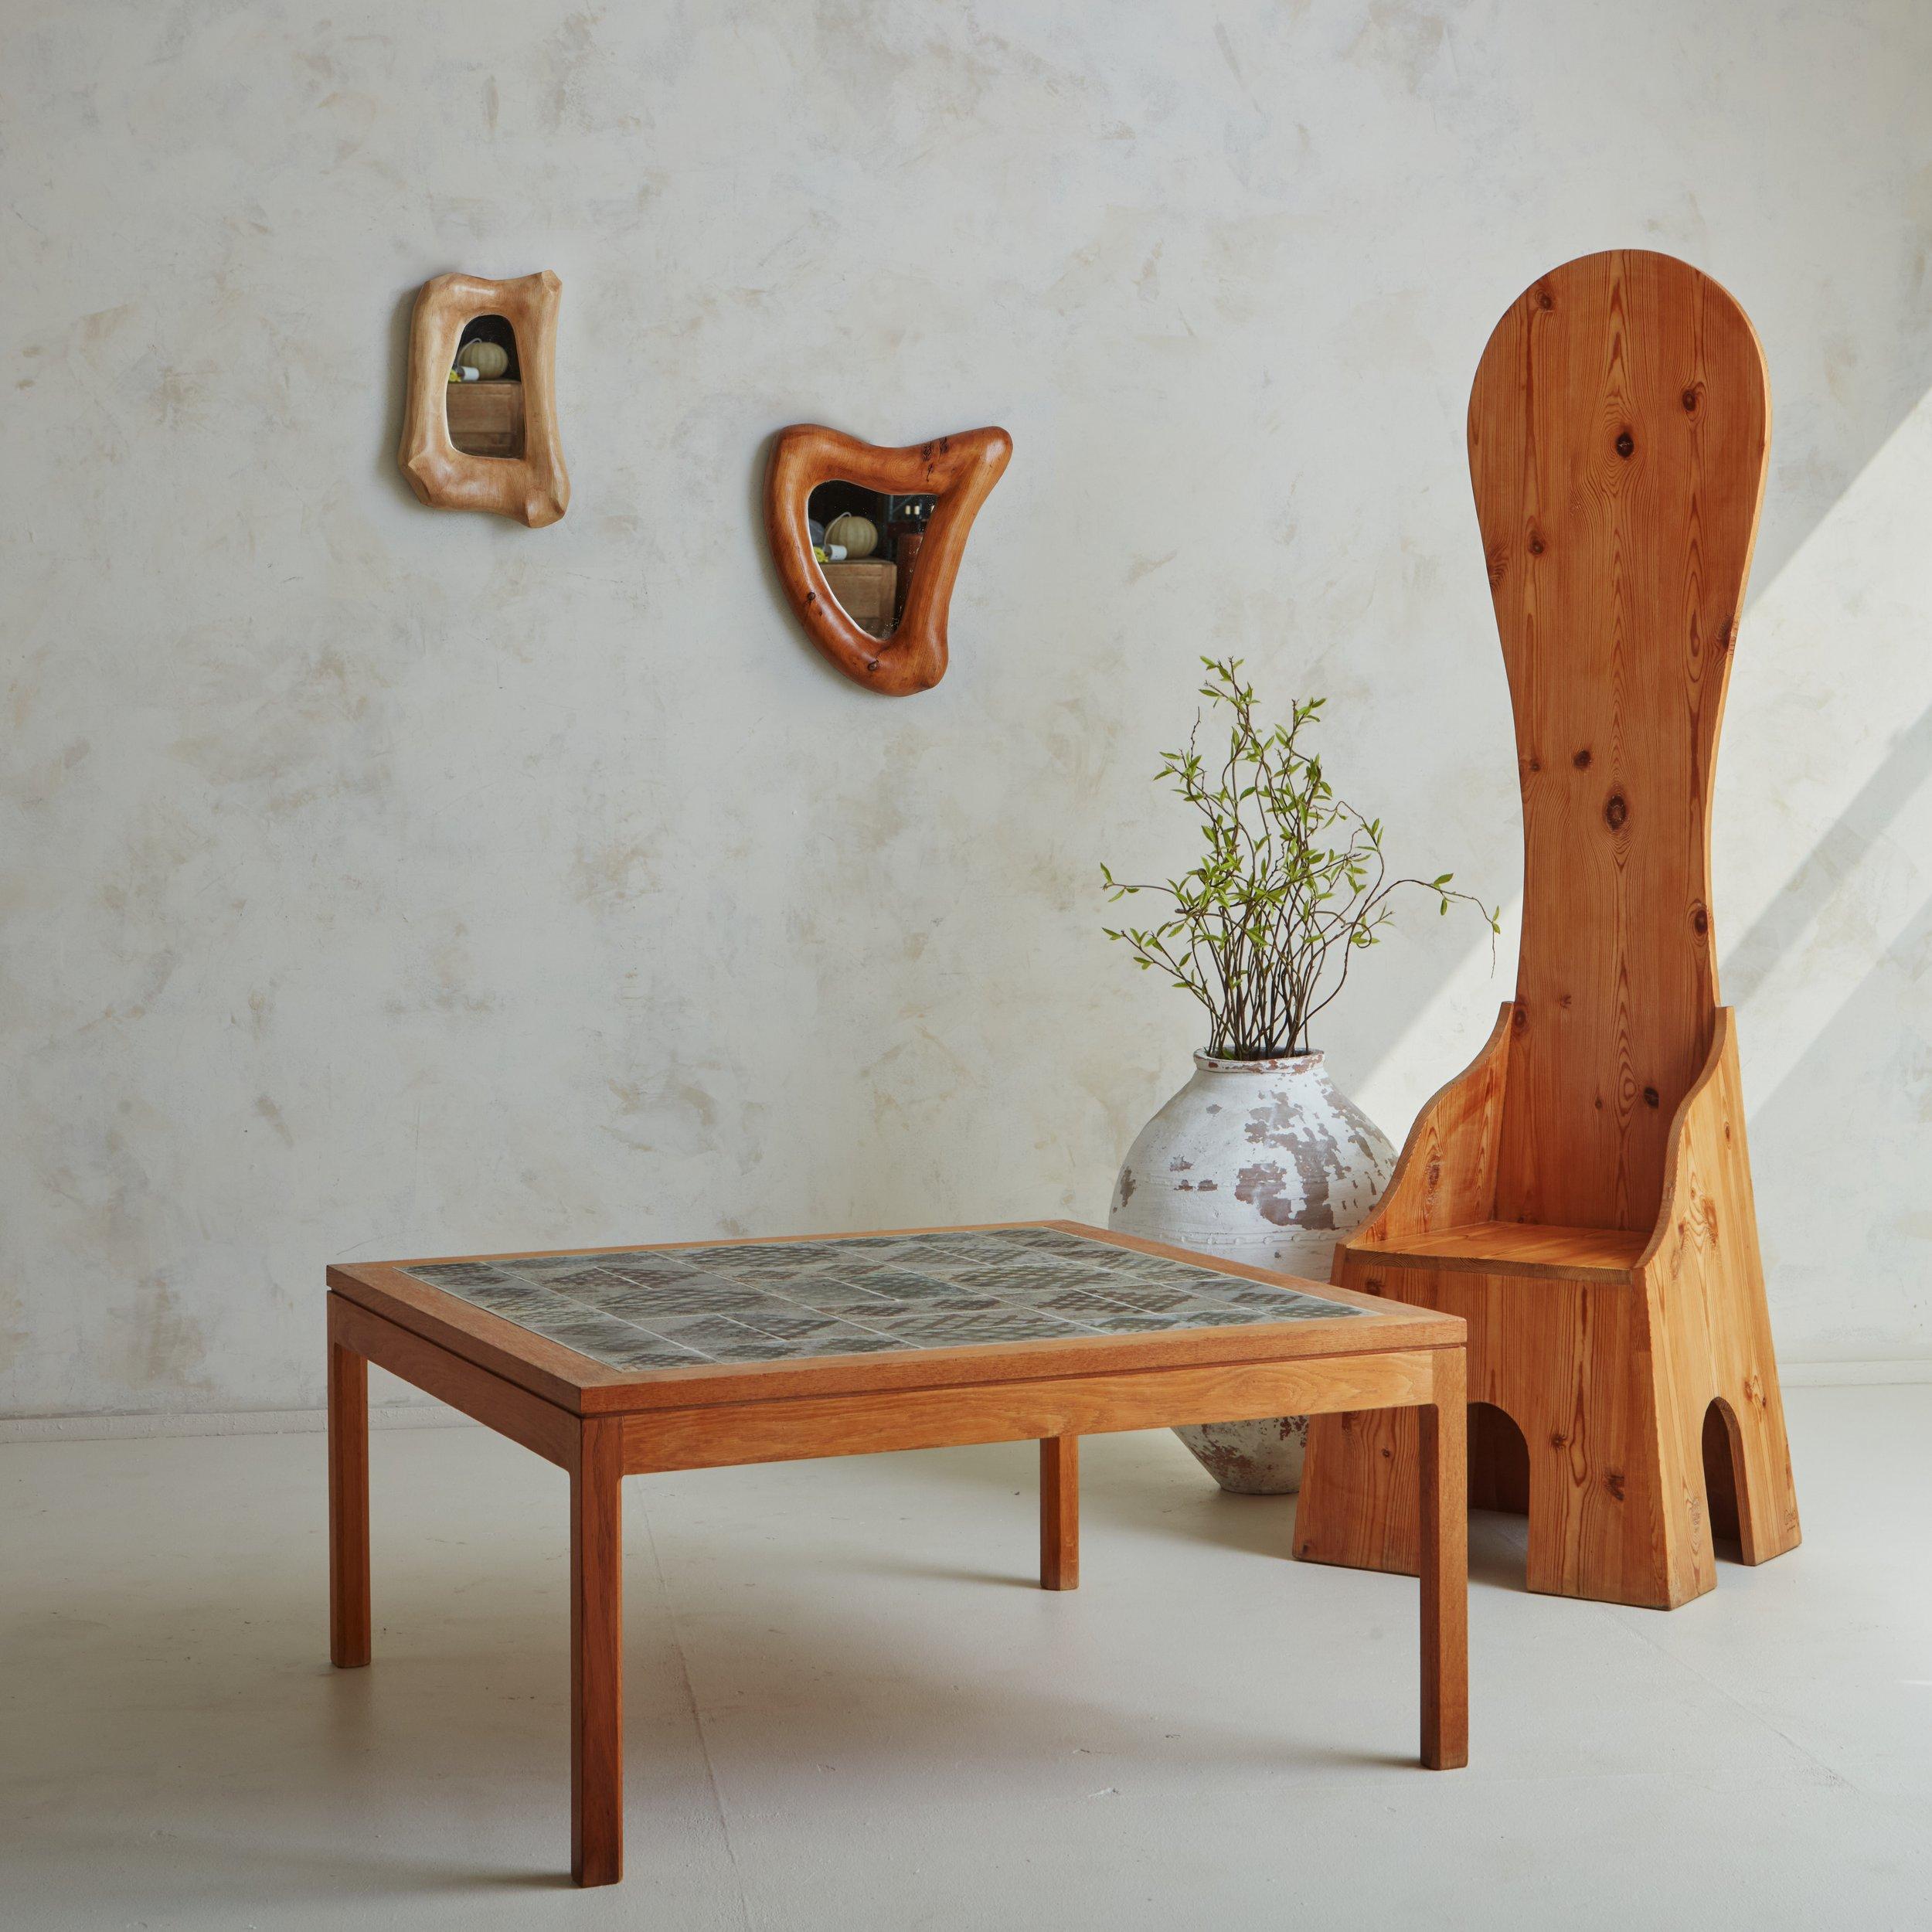 Chaise italienne Sedia Alta conçue par Mario Ceroli pour Poltronova en 1972. Cette chaise sculpturale a été sculptée dans un bois de sapin magnifiquement grainé et présente un dossier incurvé très haut et une base cubique anguleuse avec des détails